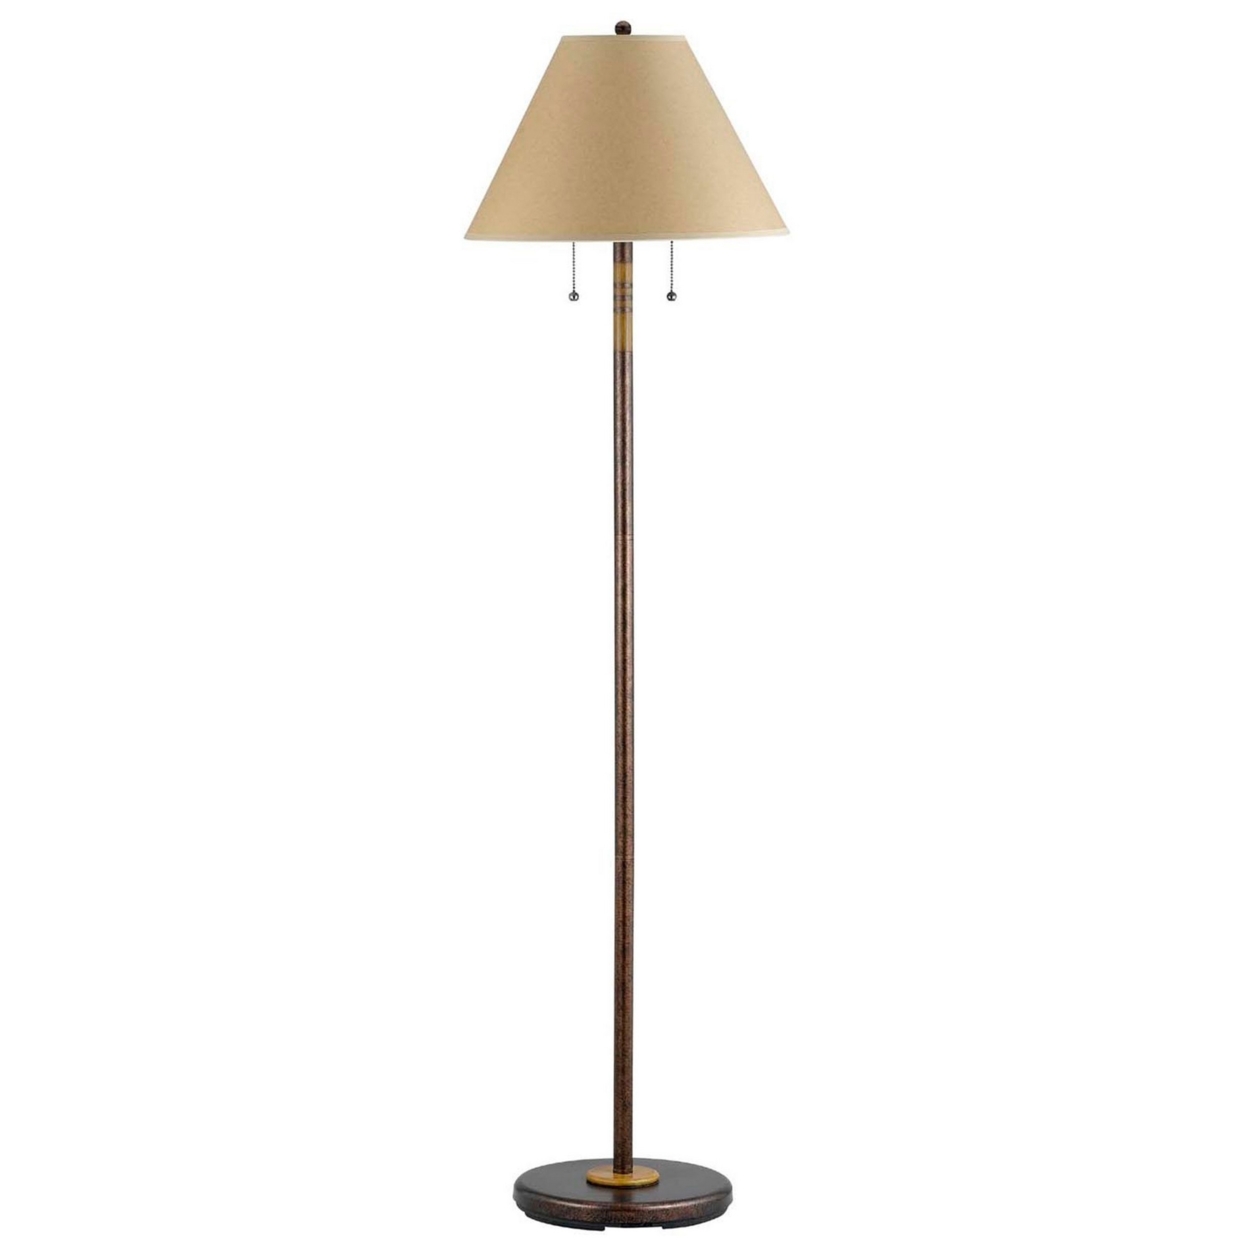 120 Watt Metal Floor Lamp With 2 Lights And Pull Chain Switch, Bronze- Saltoro Sherpi